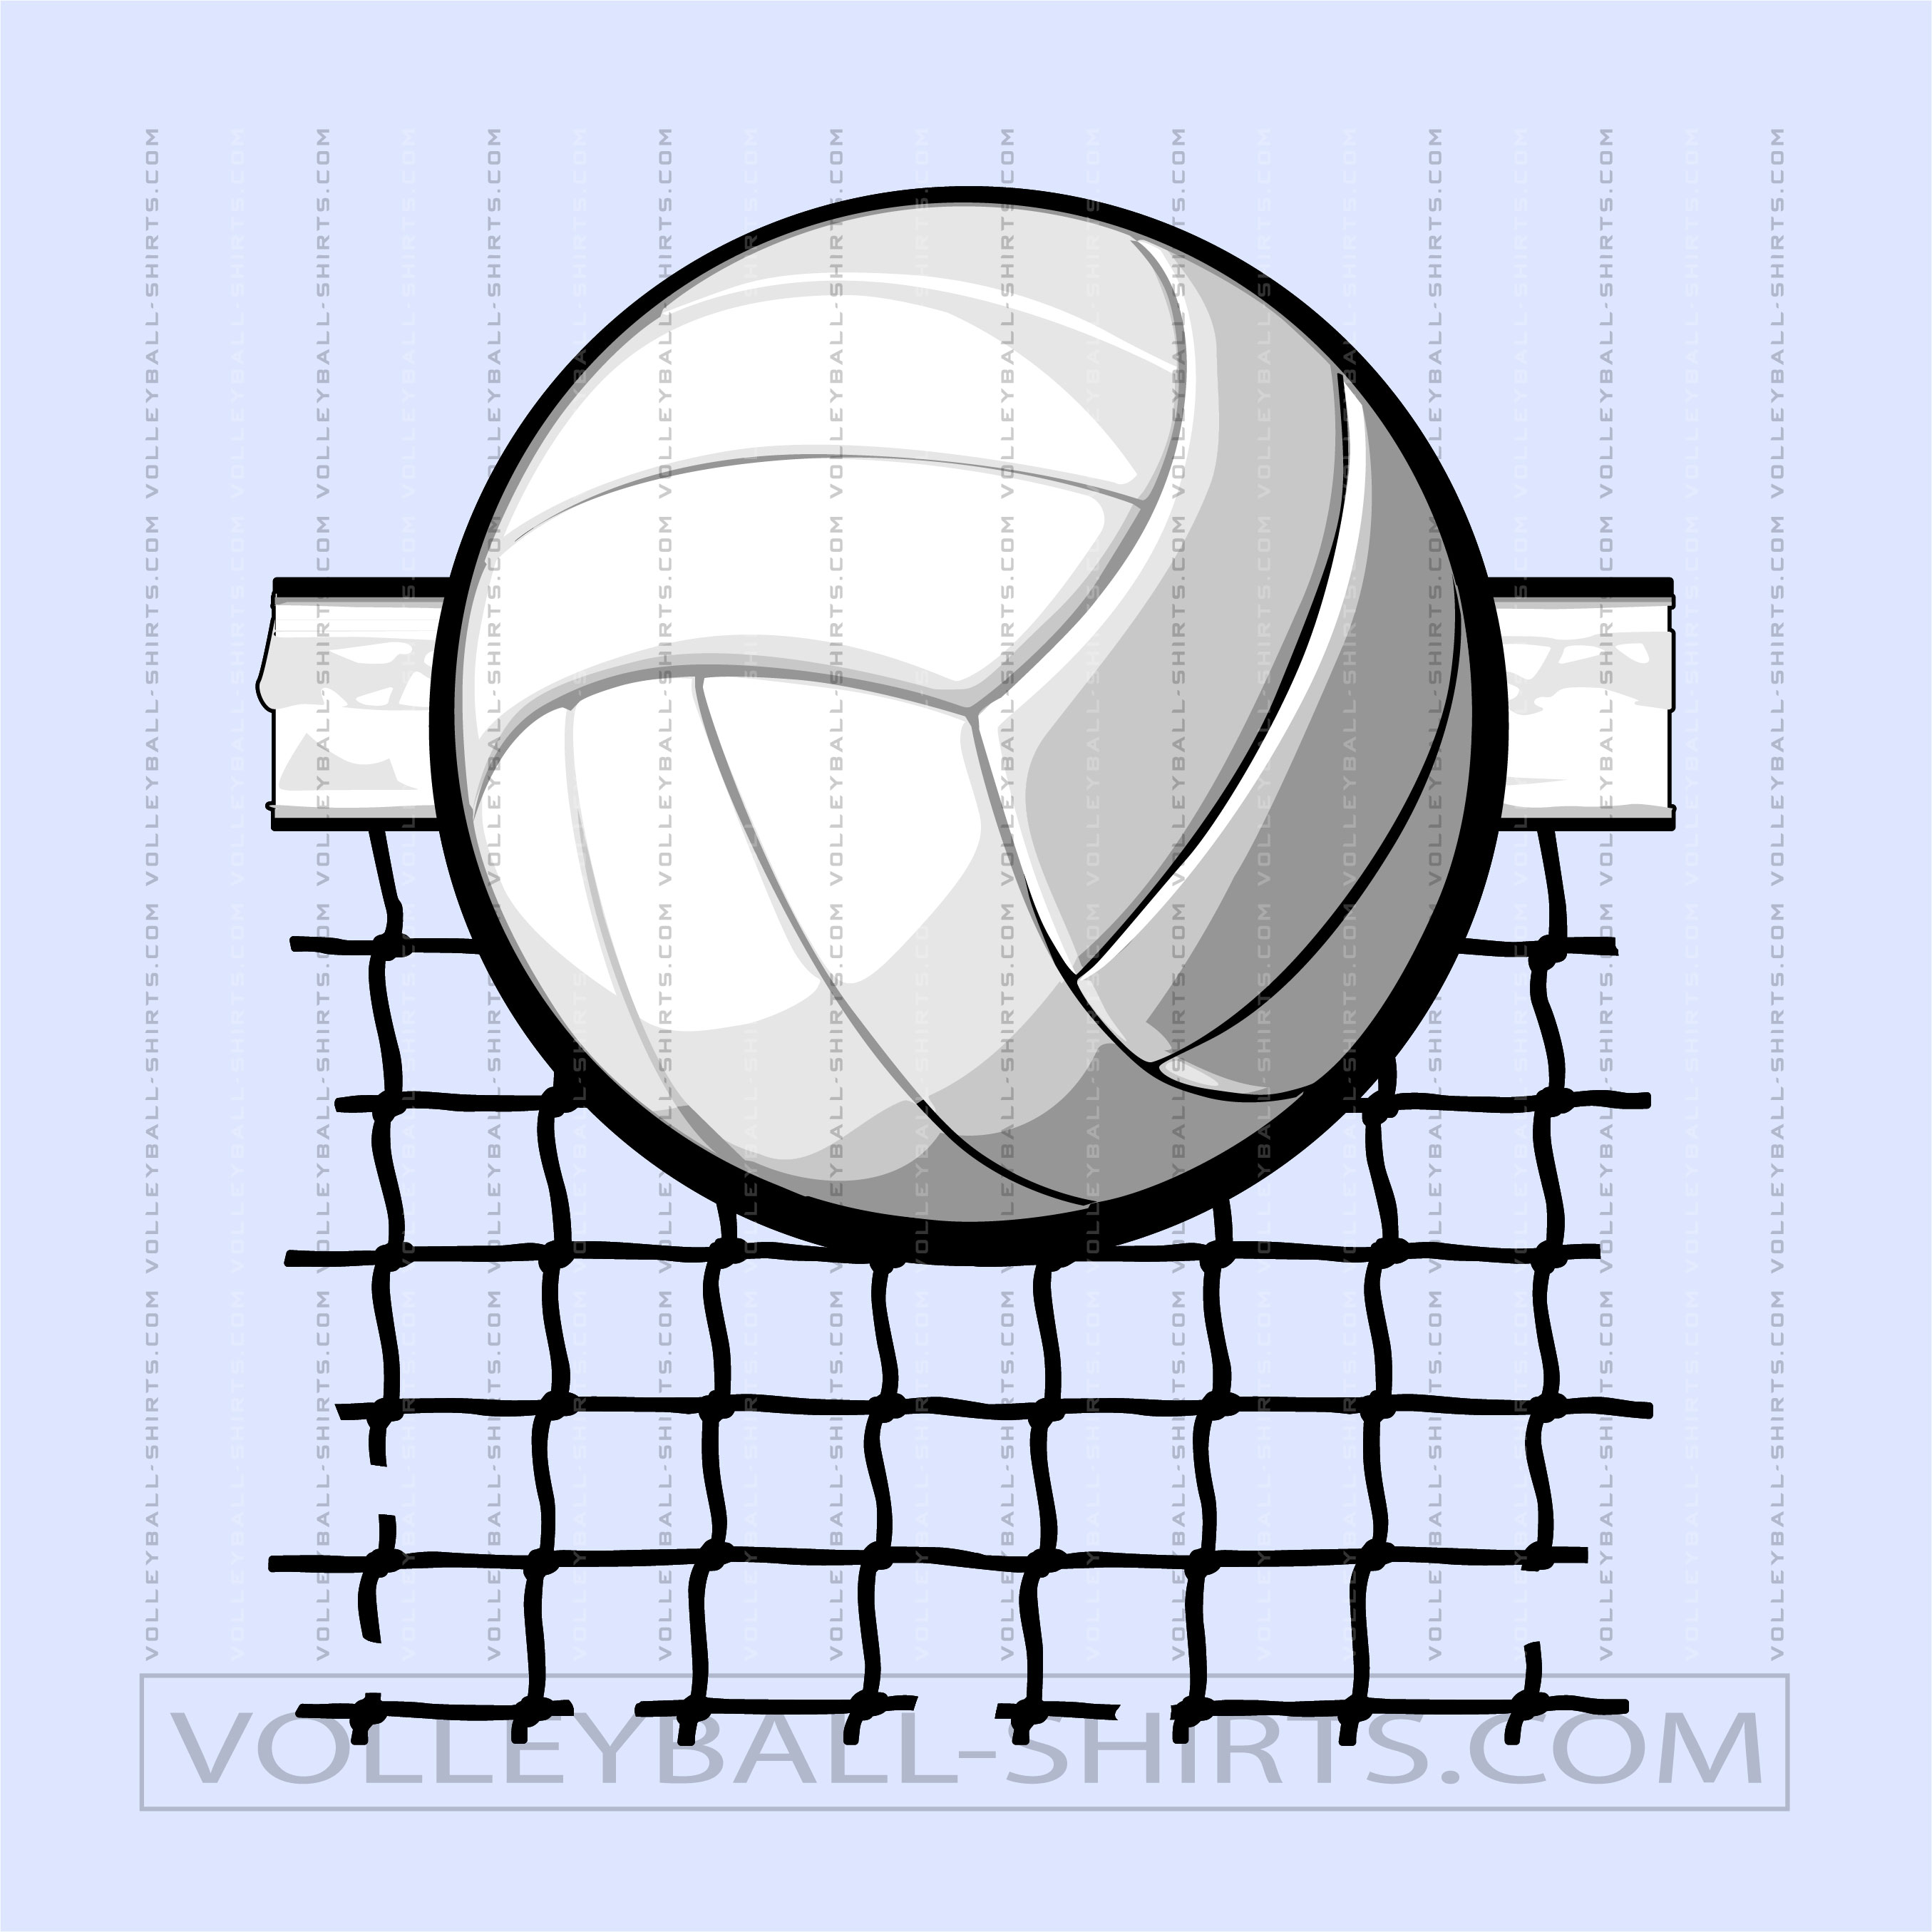 Volleyball Net Clip Art